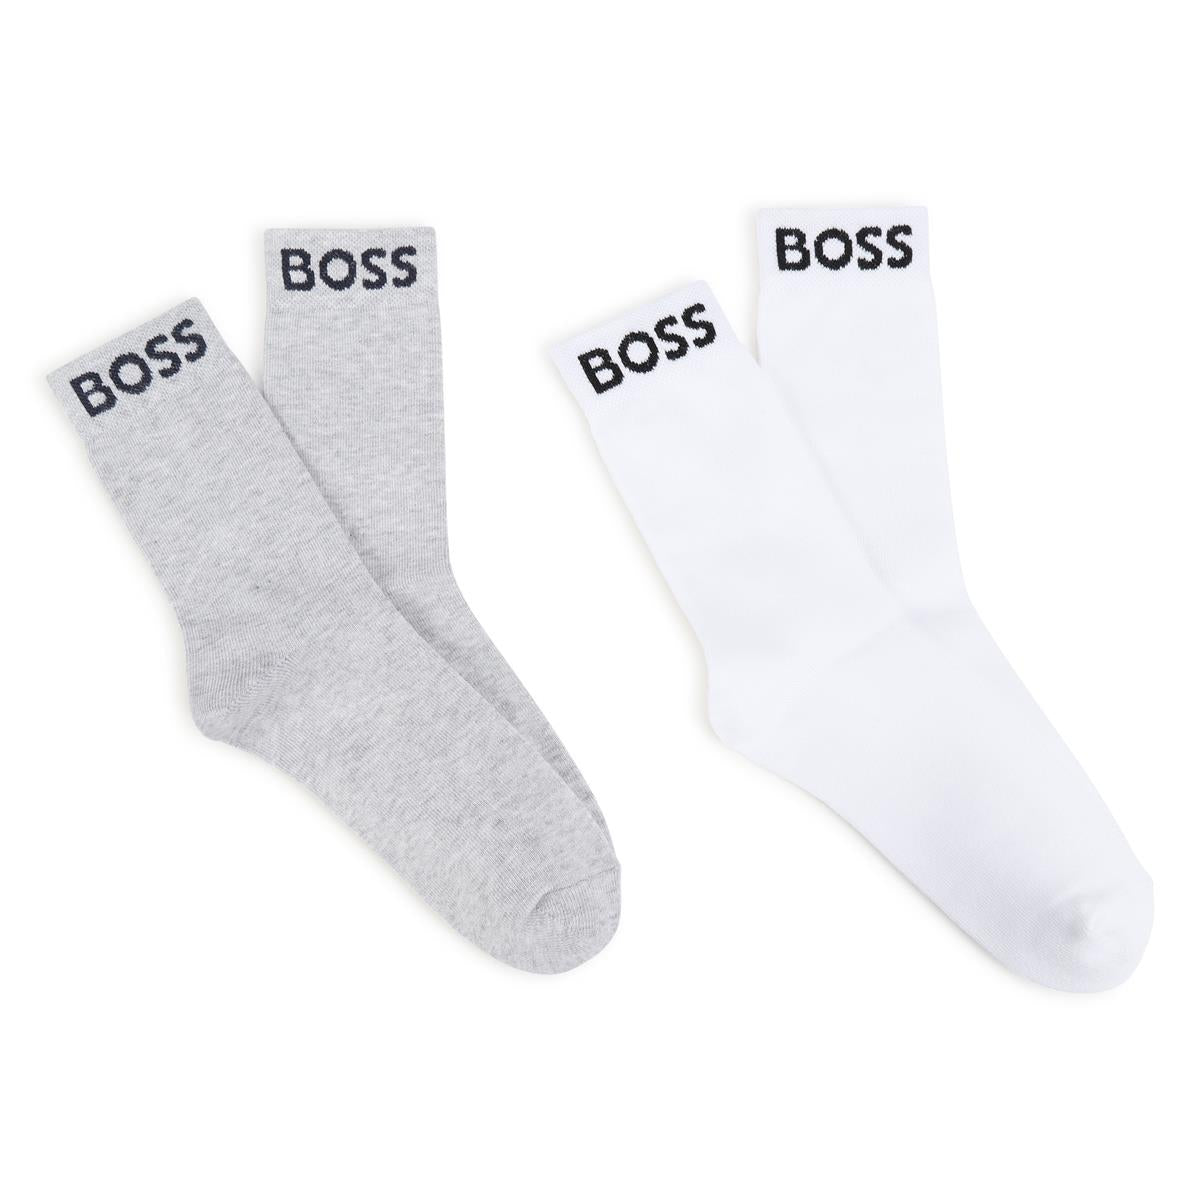 Boys White Cotton Socks Set(2 Pack)